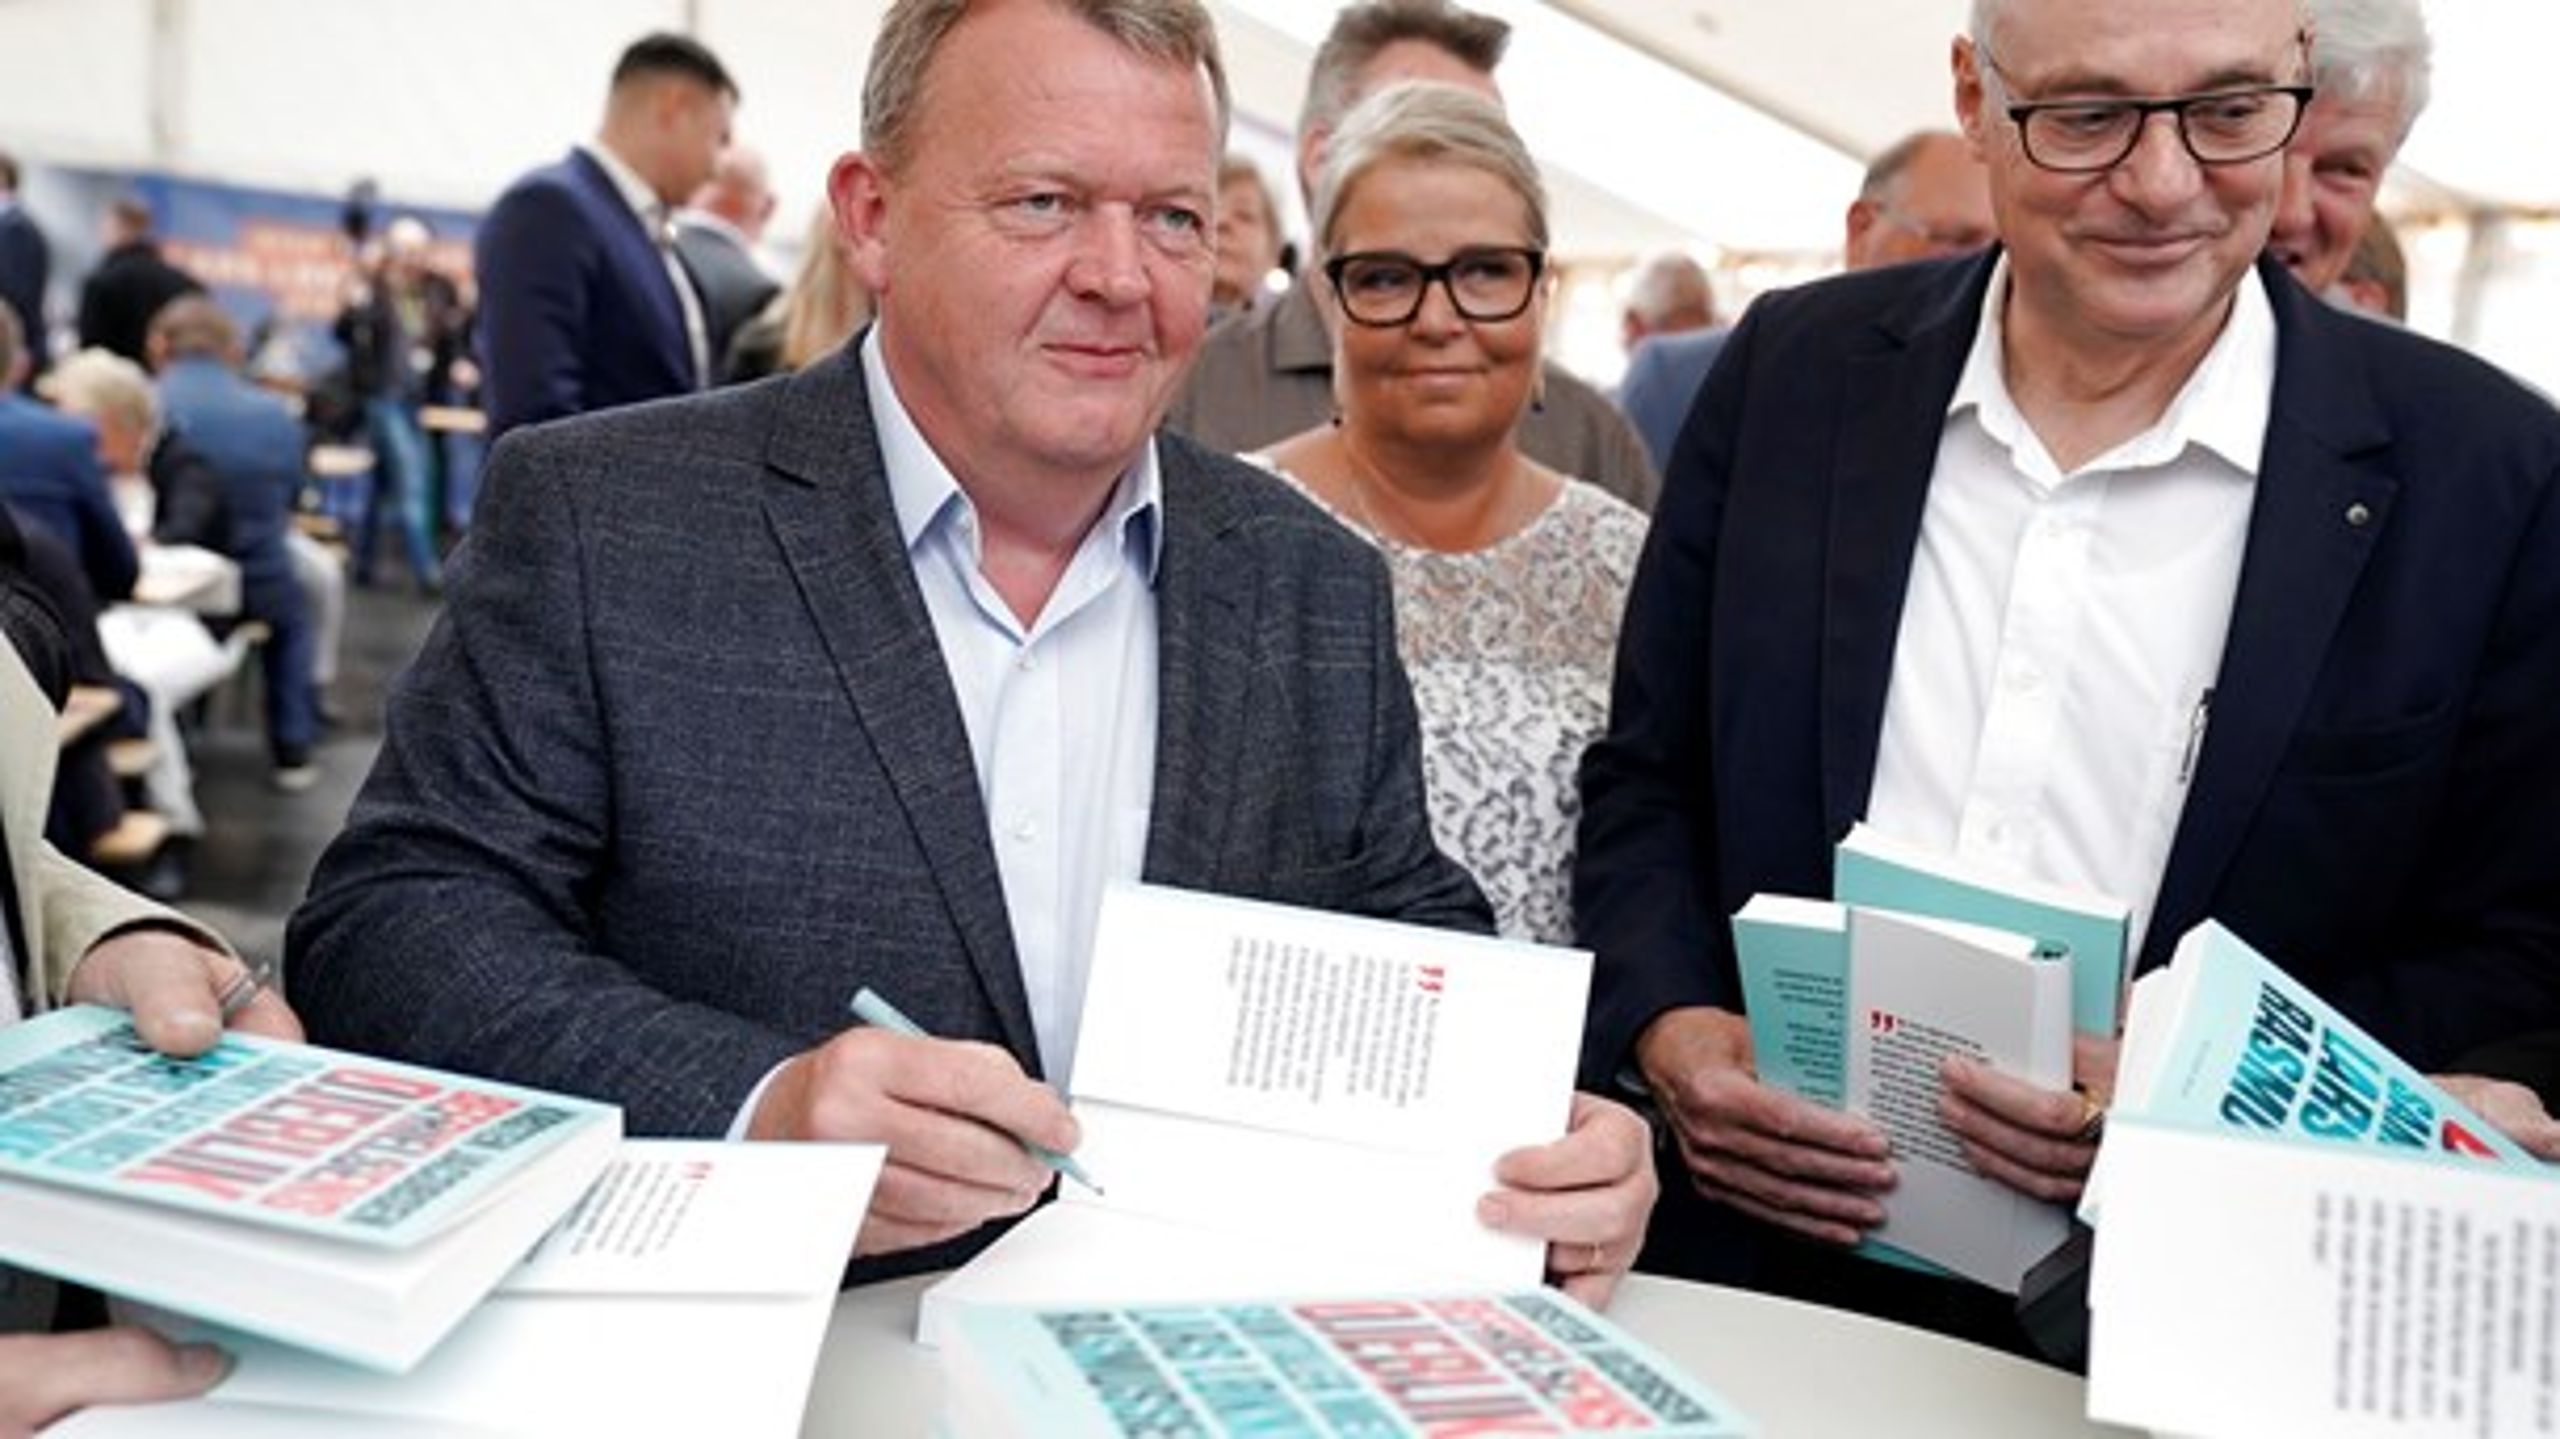 Lars Løkke Rasmussens velfærdsløfte og udmelding om en mulig SV-regering har været blandt valgkampens største overraskelser, skriver Lars Midtiby.